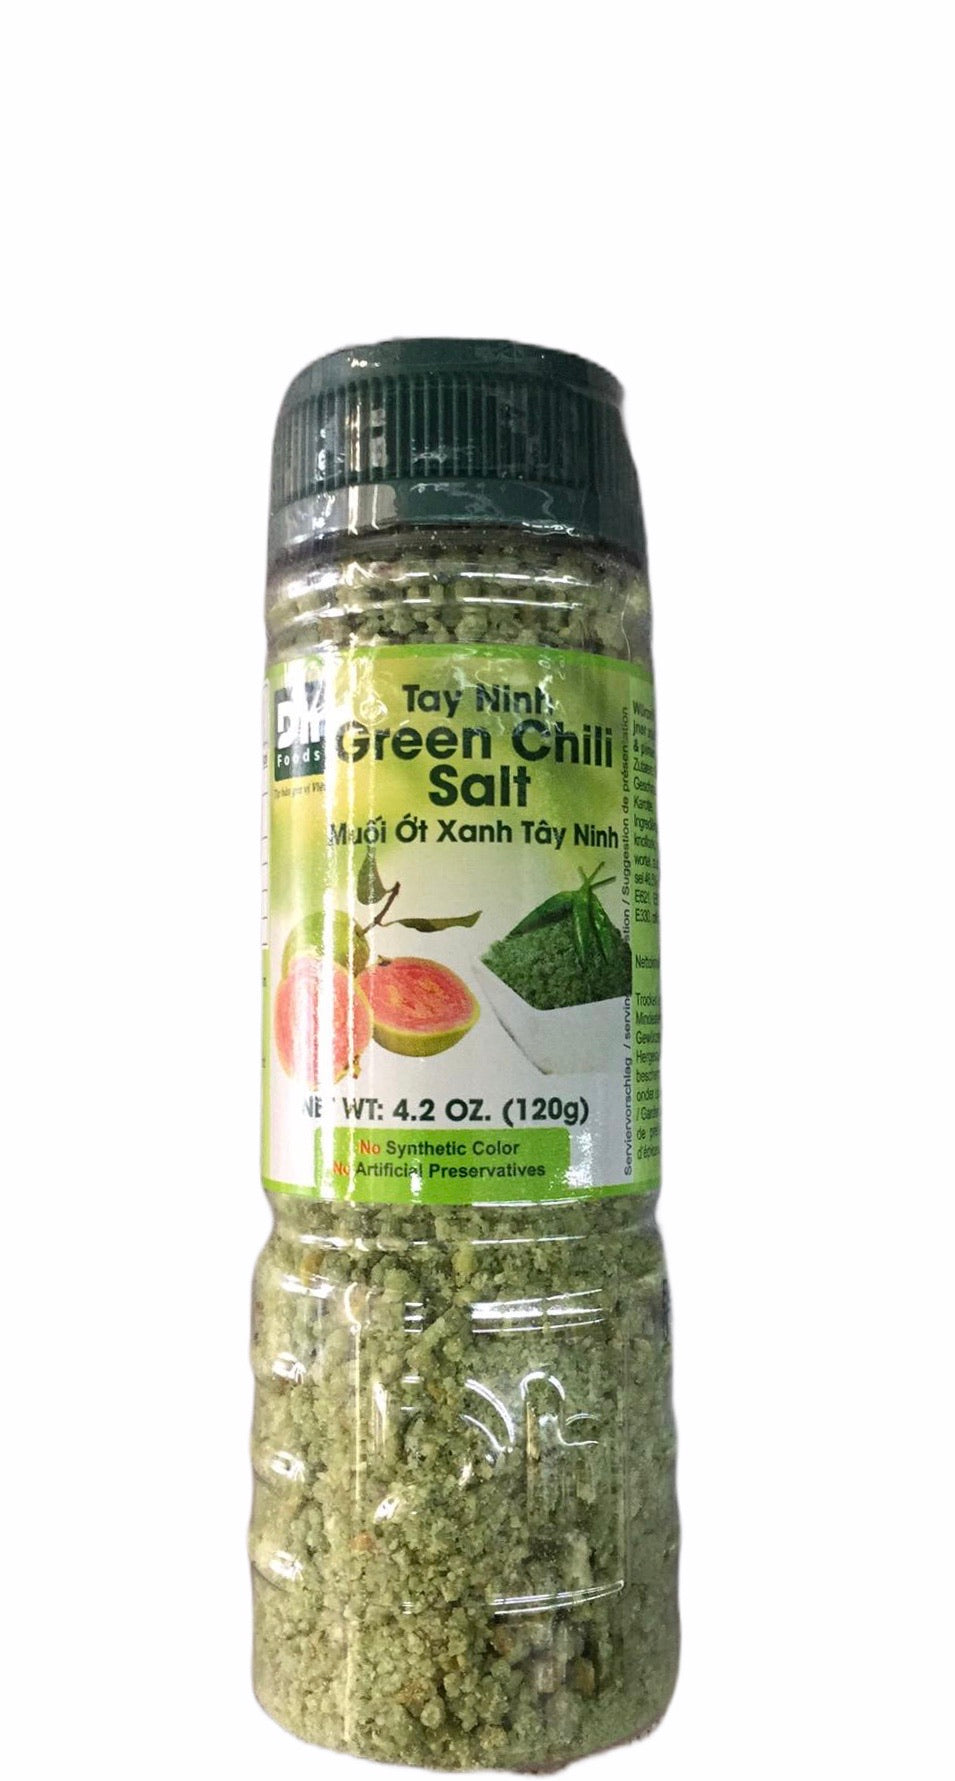 Würzmischung Salz Grüner Chili DH Foods 120g- Muối ớt xanh Tây Ninh 120g